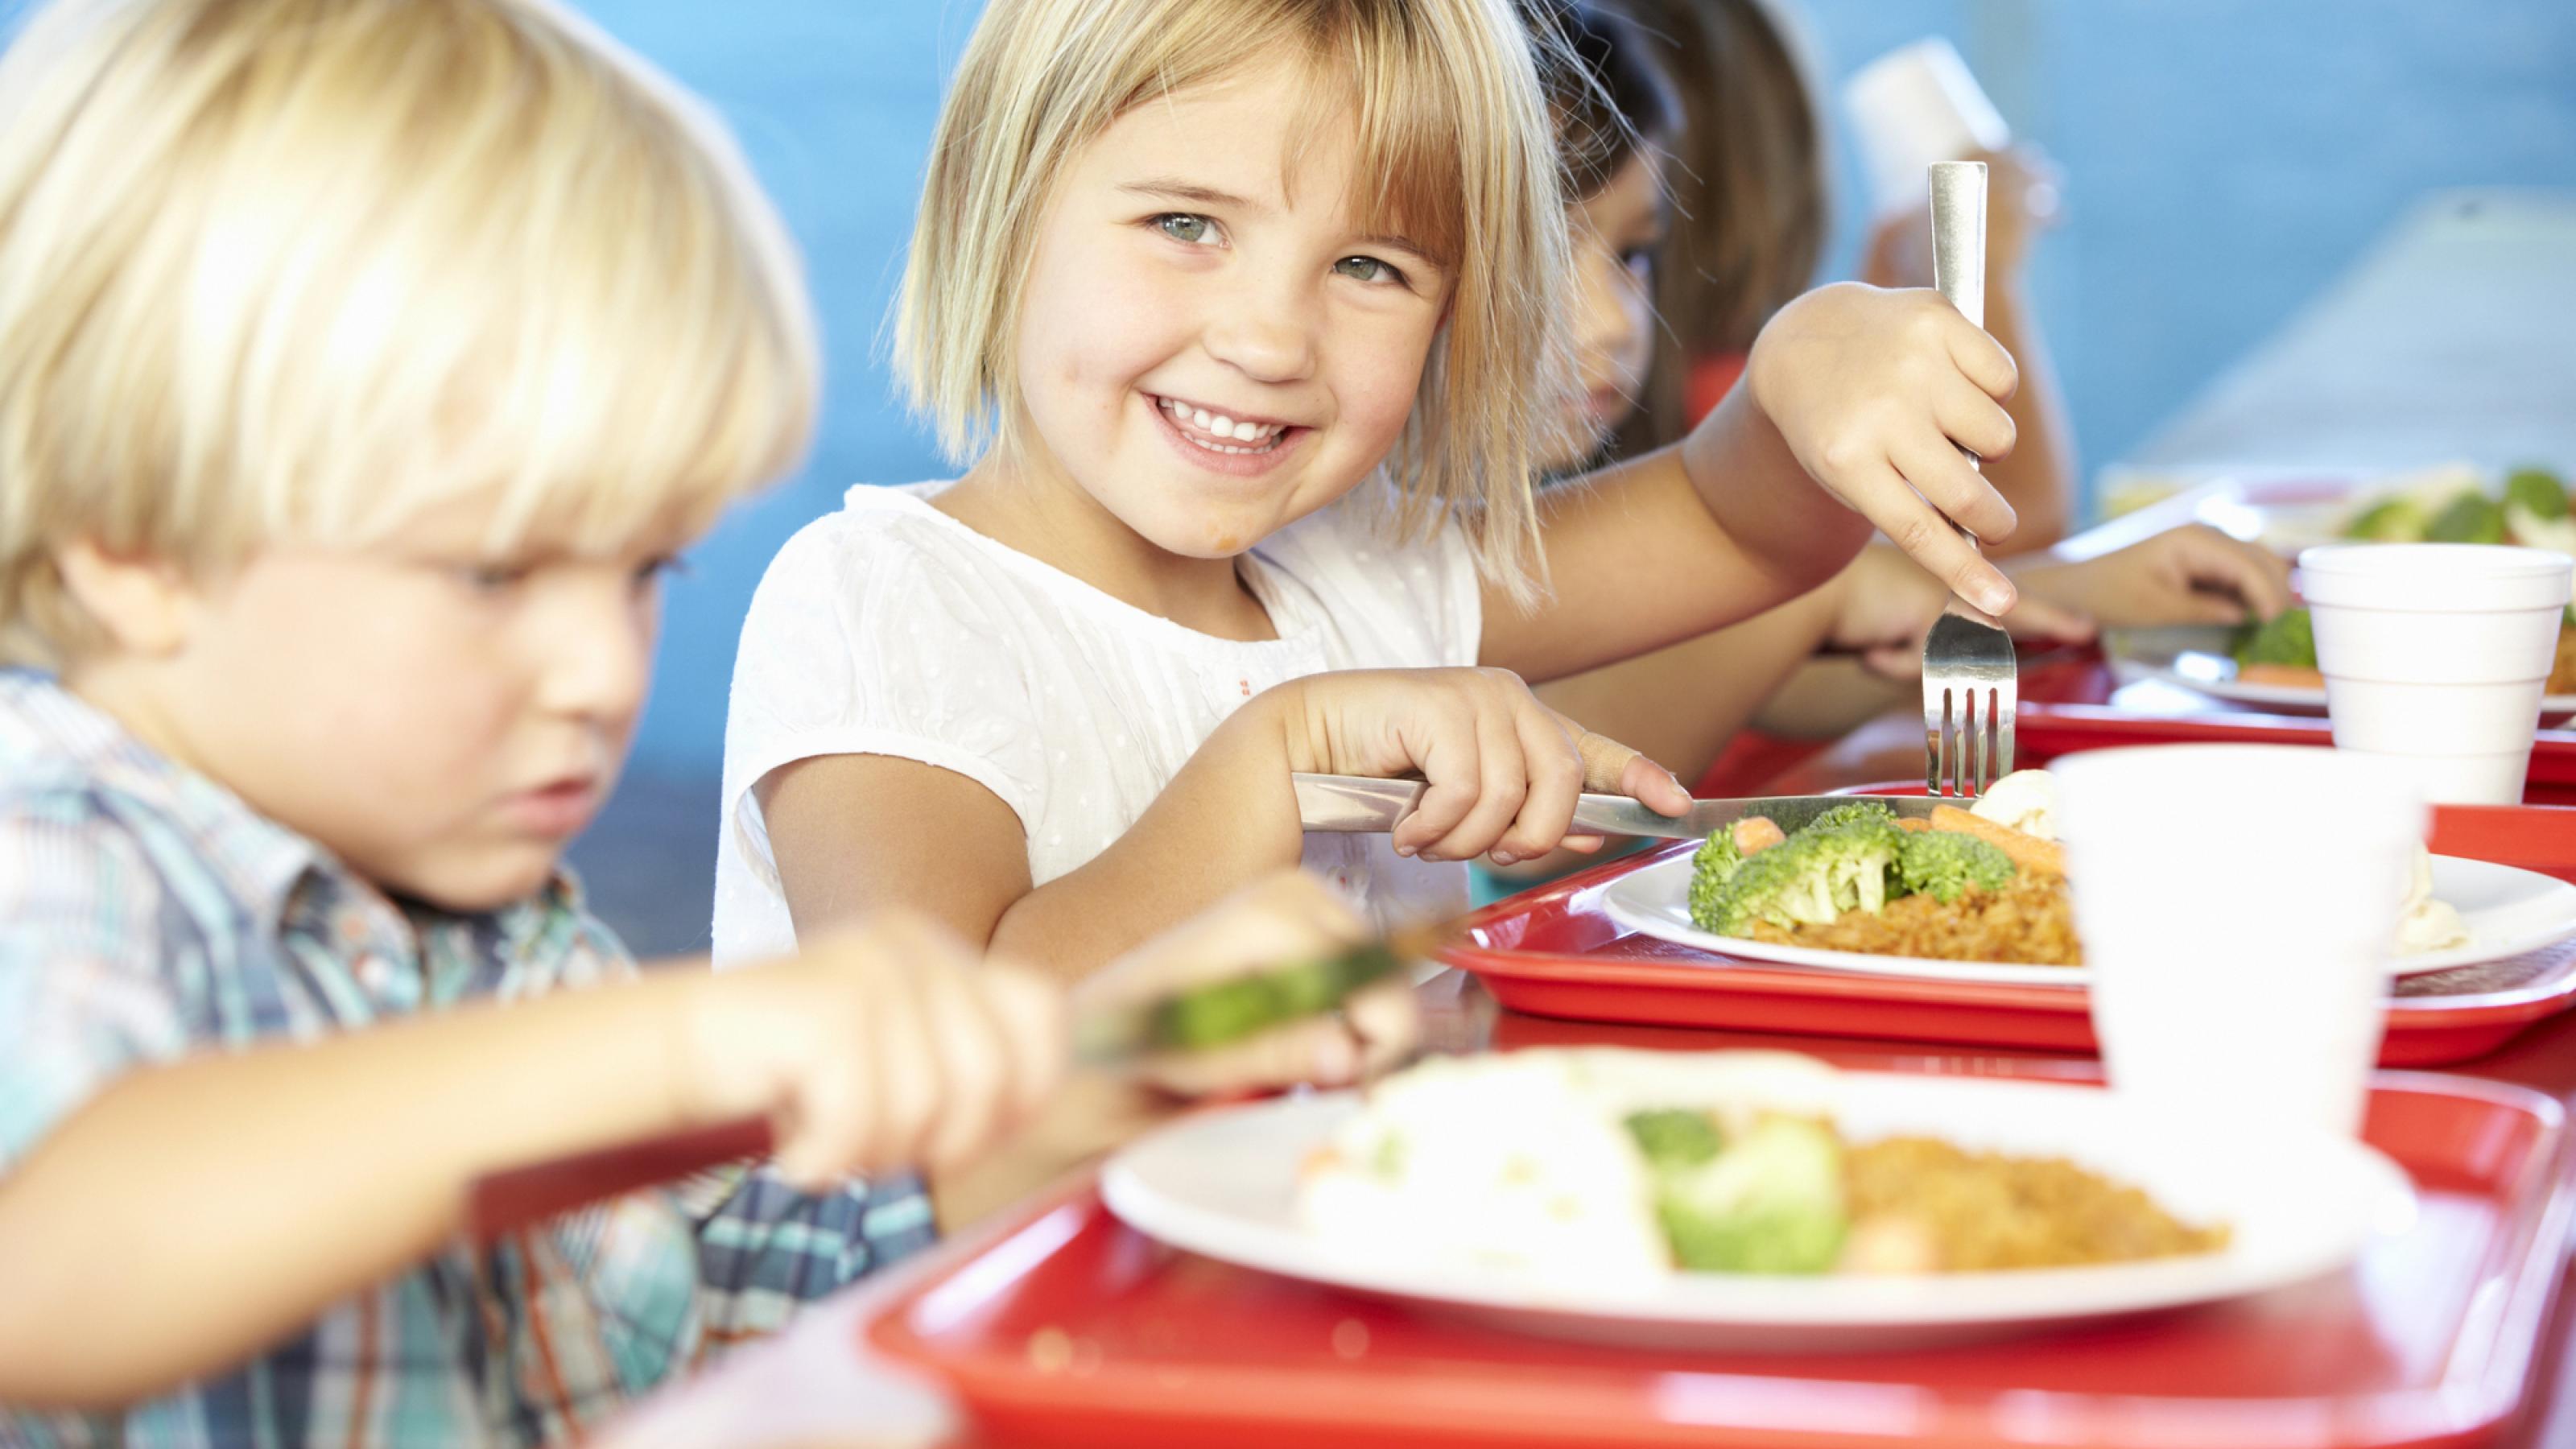 Fröhliche Kinder beim Essen in der Mensa, vor ihnen ein Teller unter anderem mit Brokkoli.